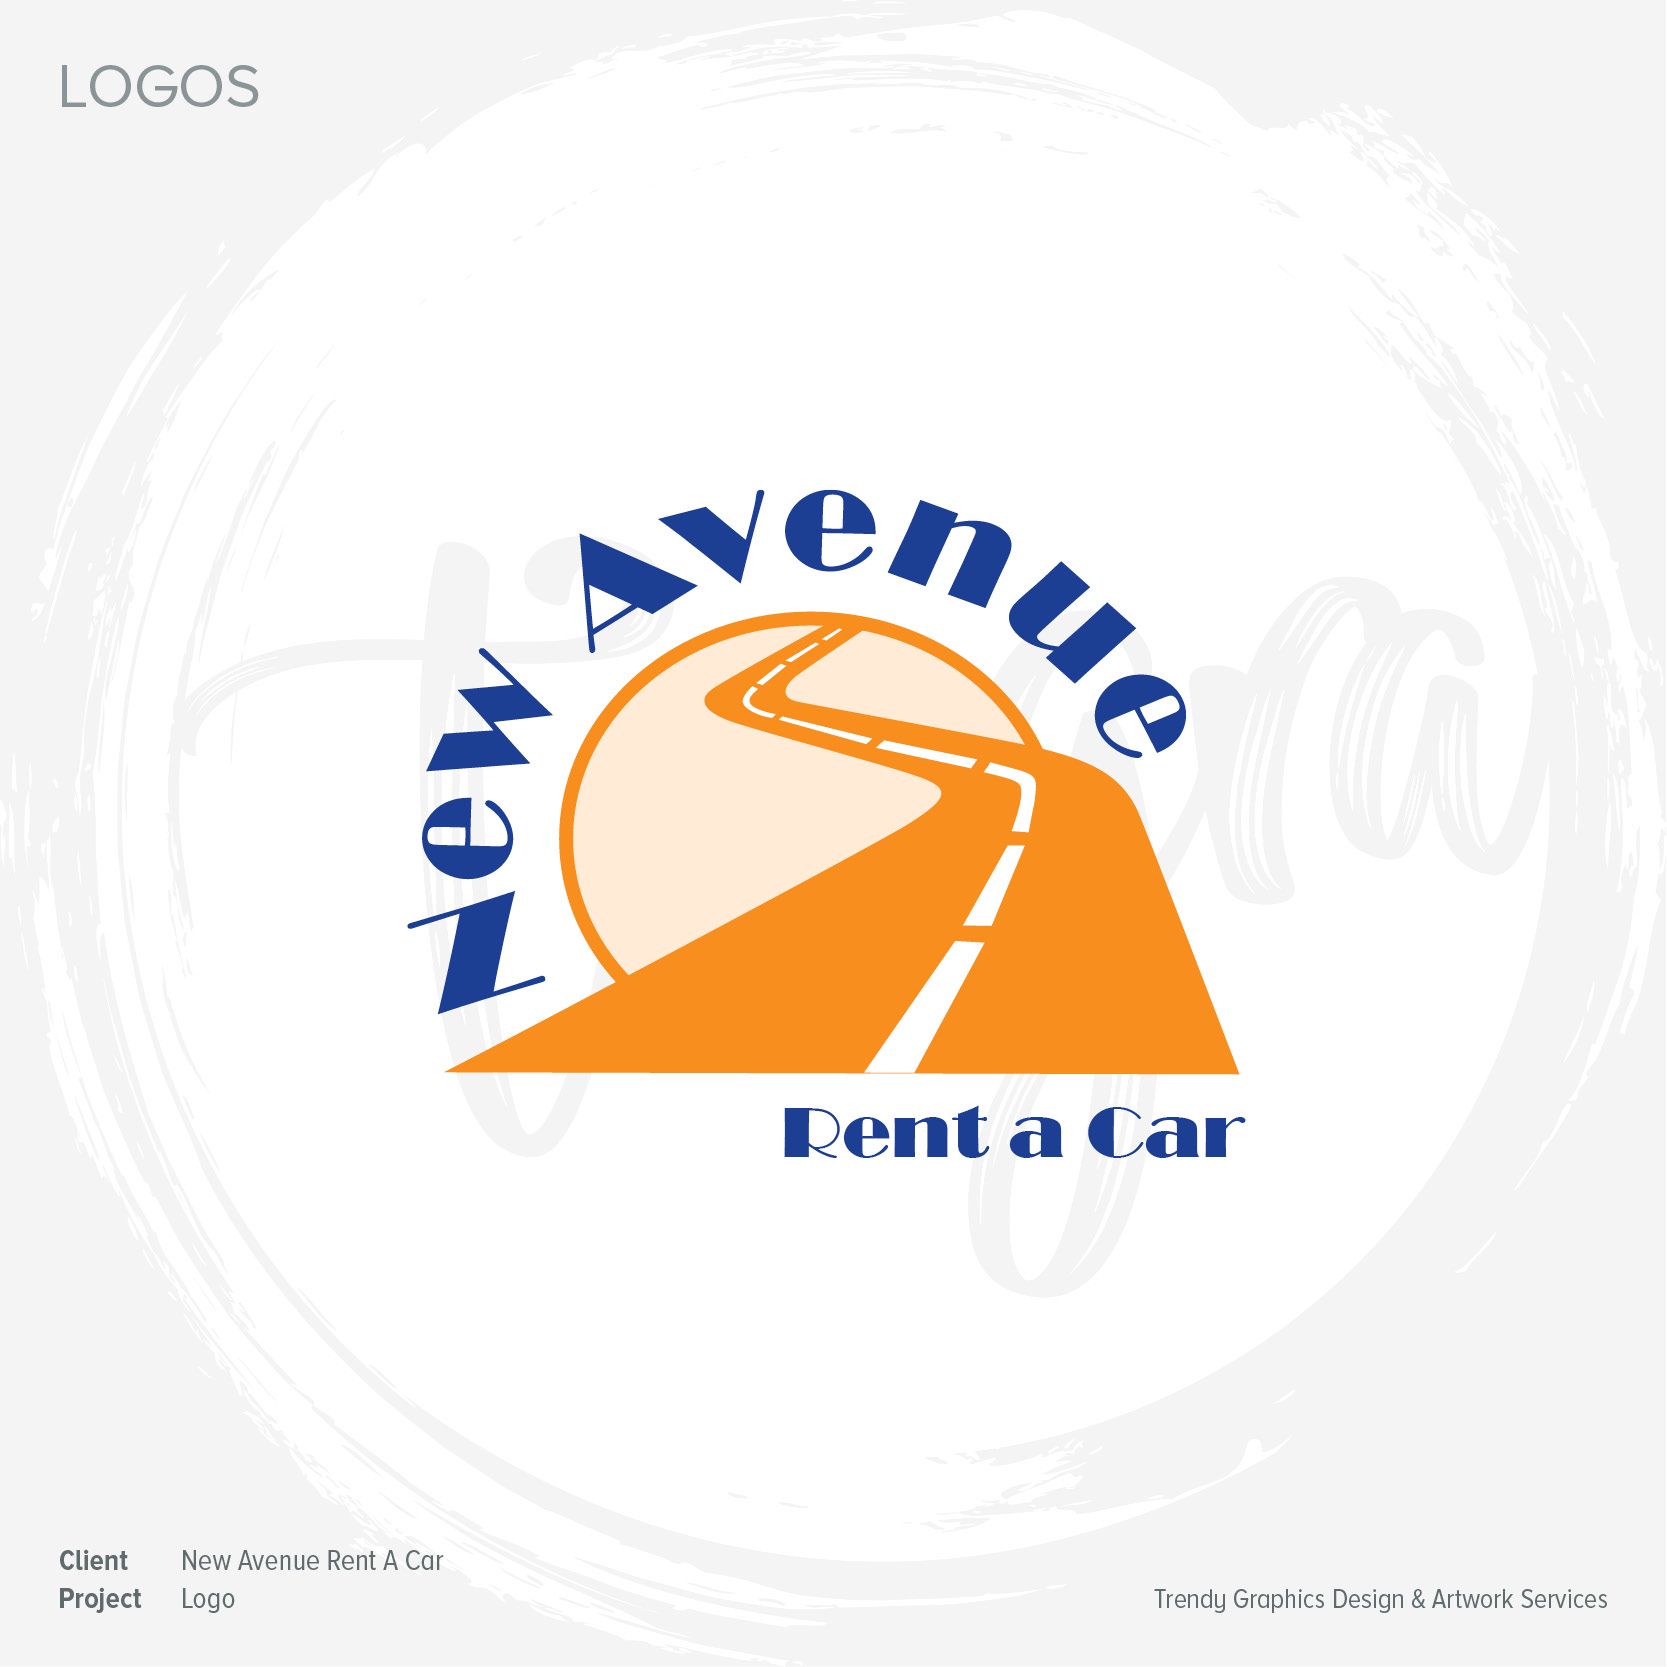 New Avenue rent a car company